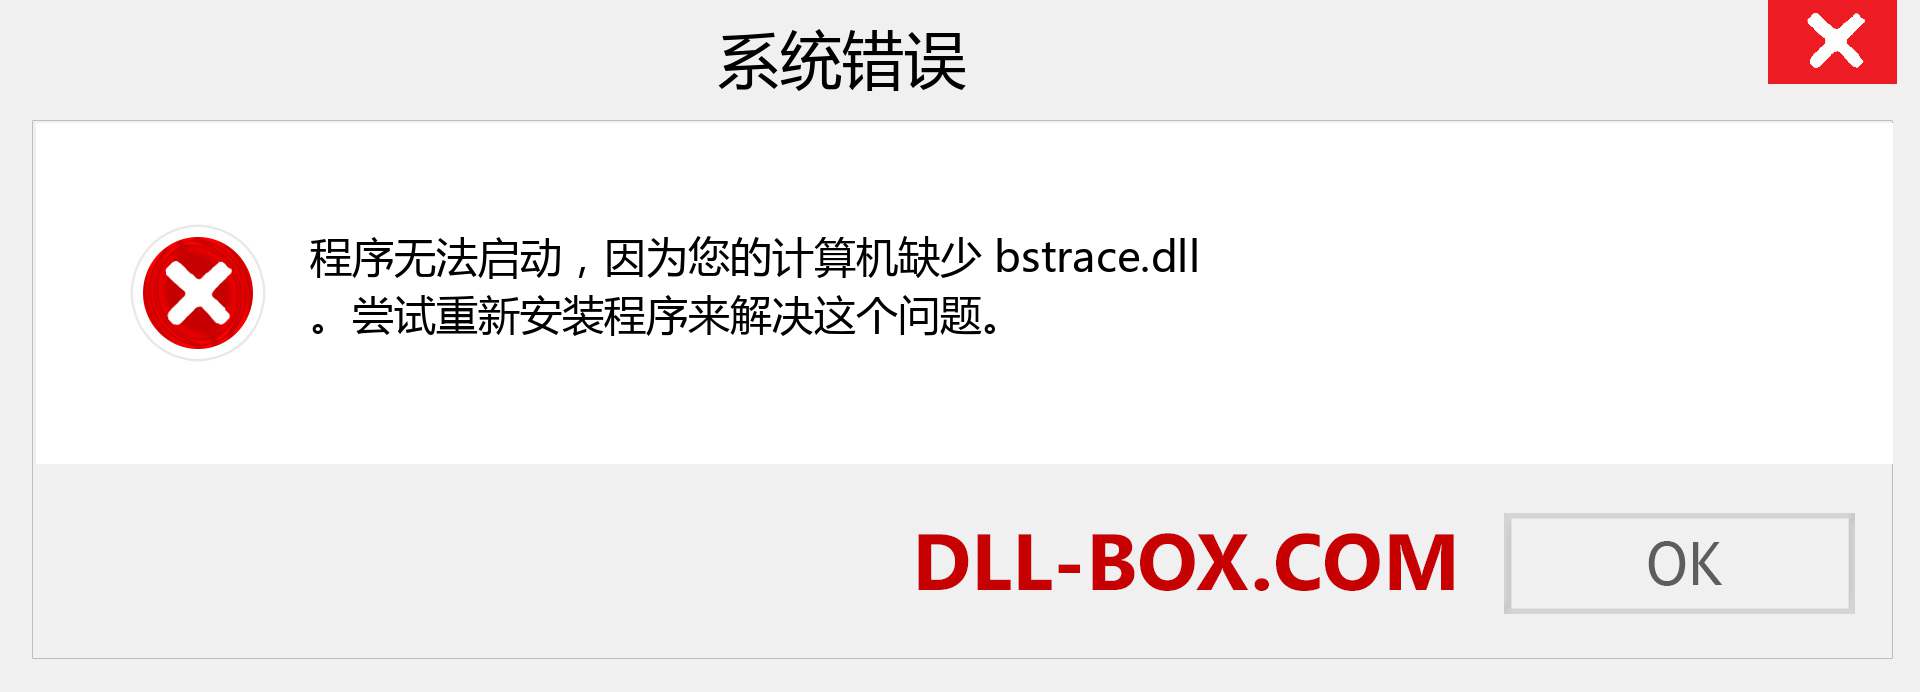 bstrace.dll 文件丢失？。 适用于 Windows 7、8、10 的下载 - 修复 Windows、照片、图像上的 bstrace dll 丢失错误